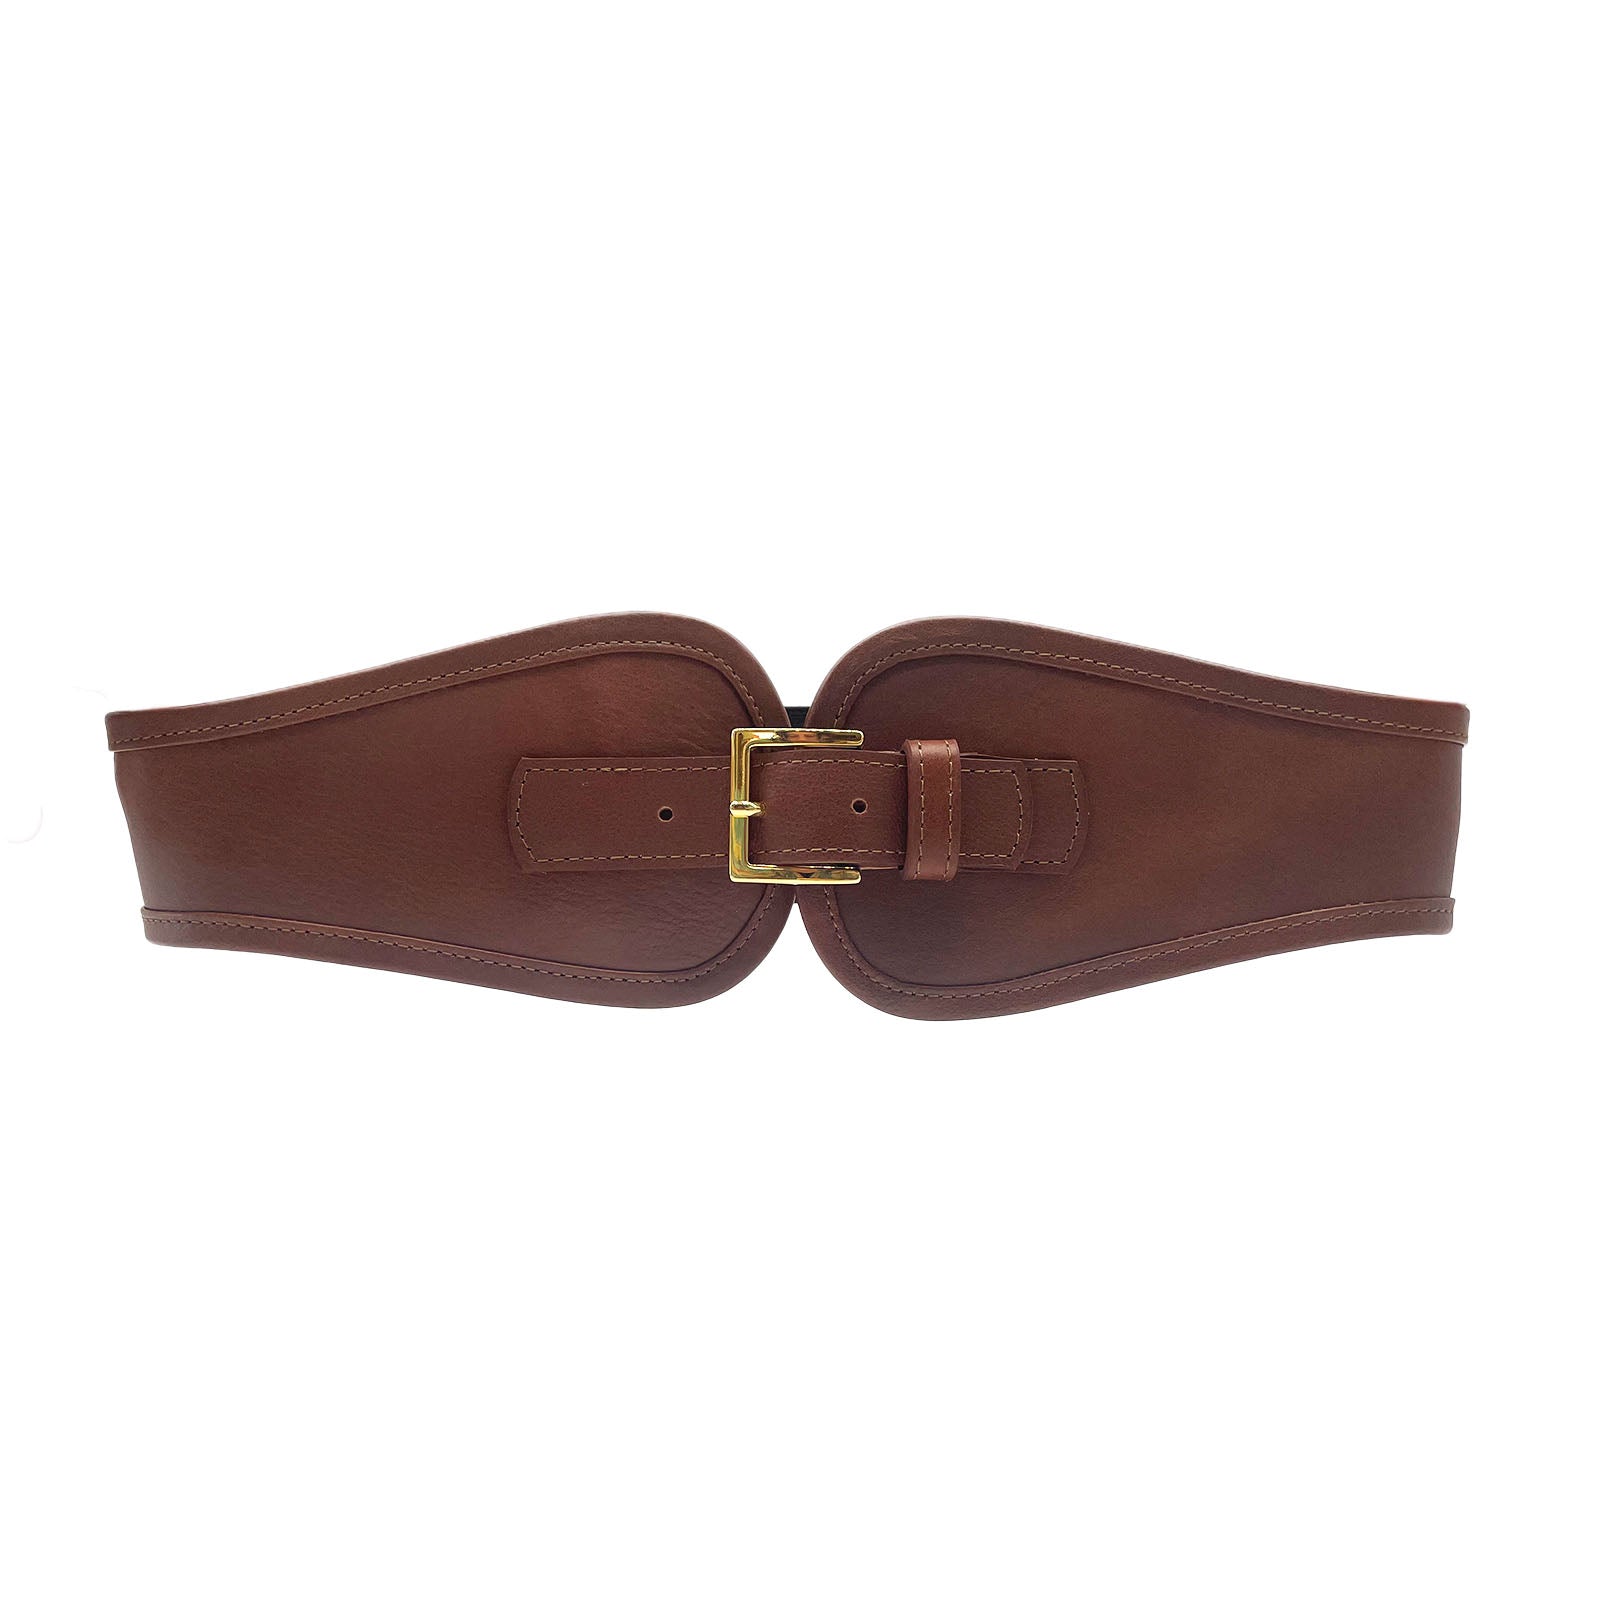 Gabrielle Waist Belt - Modern Western Cognac Leather Waist Belt ...